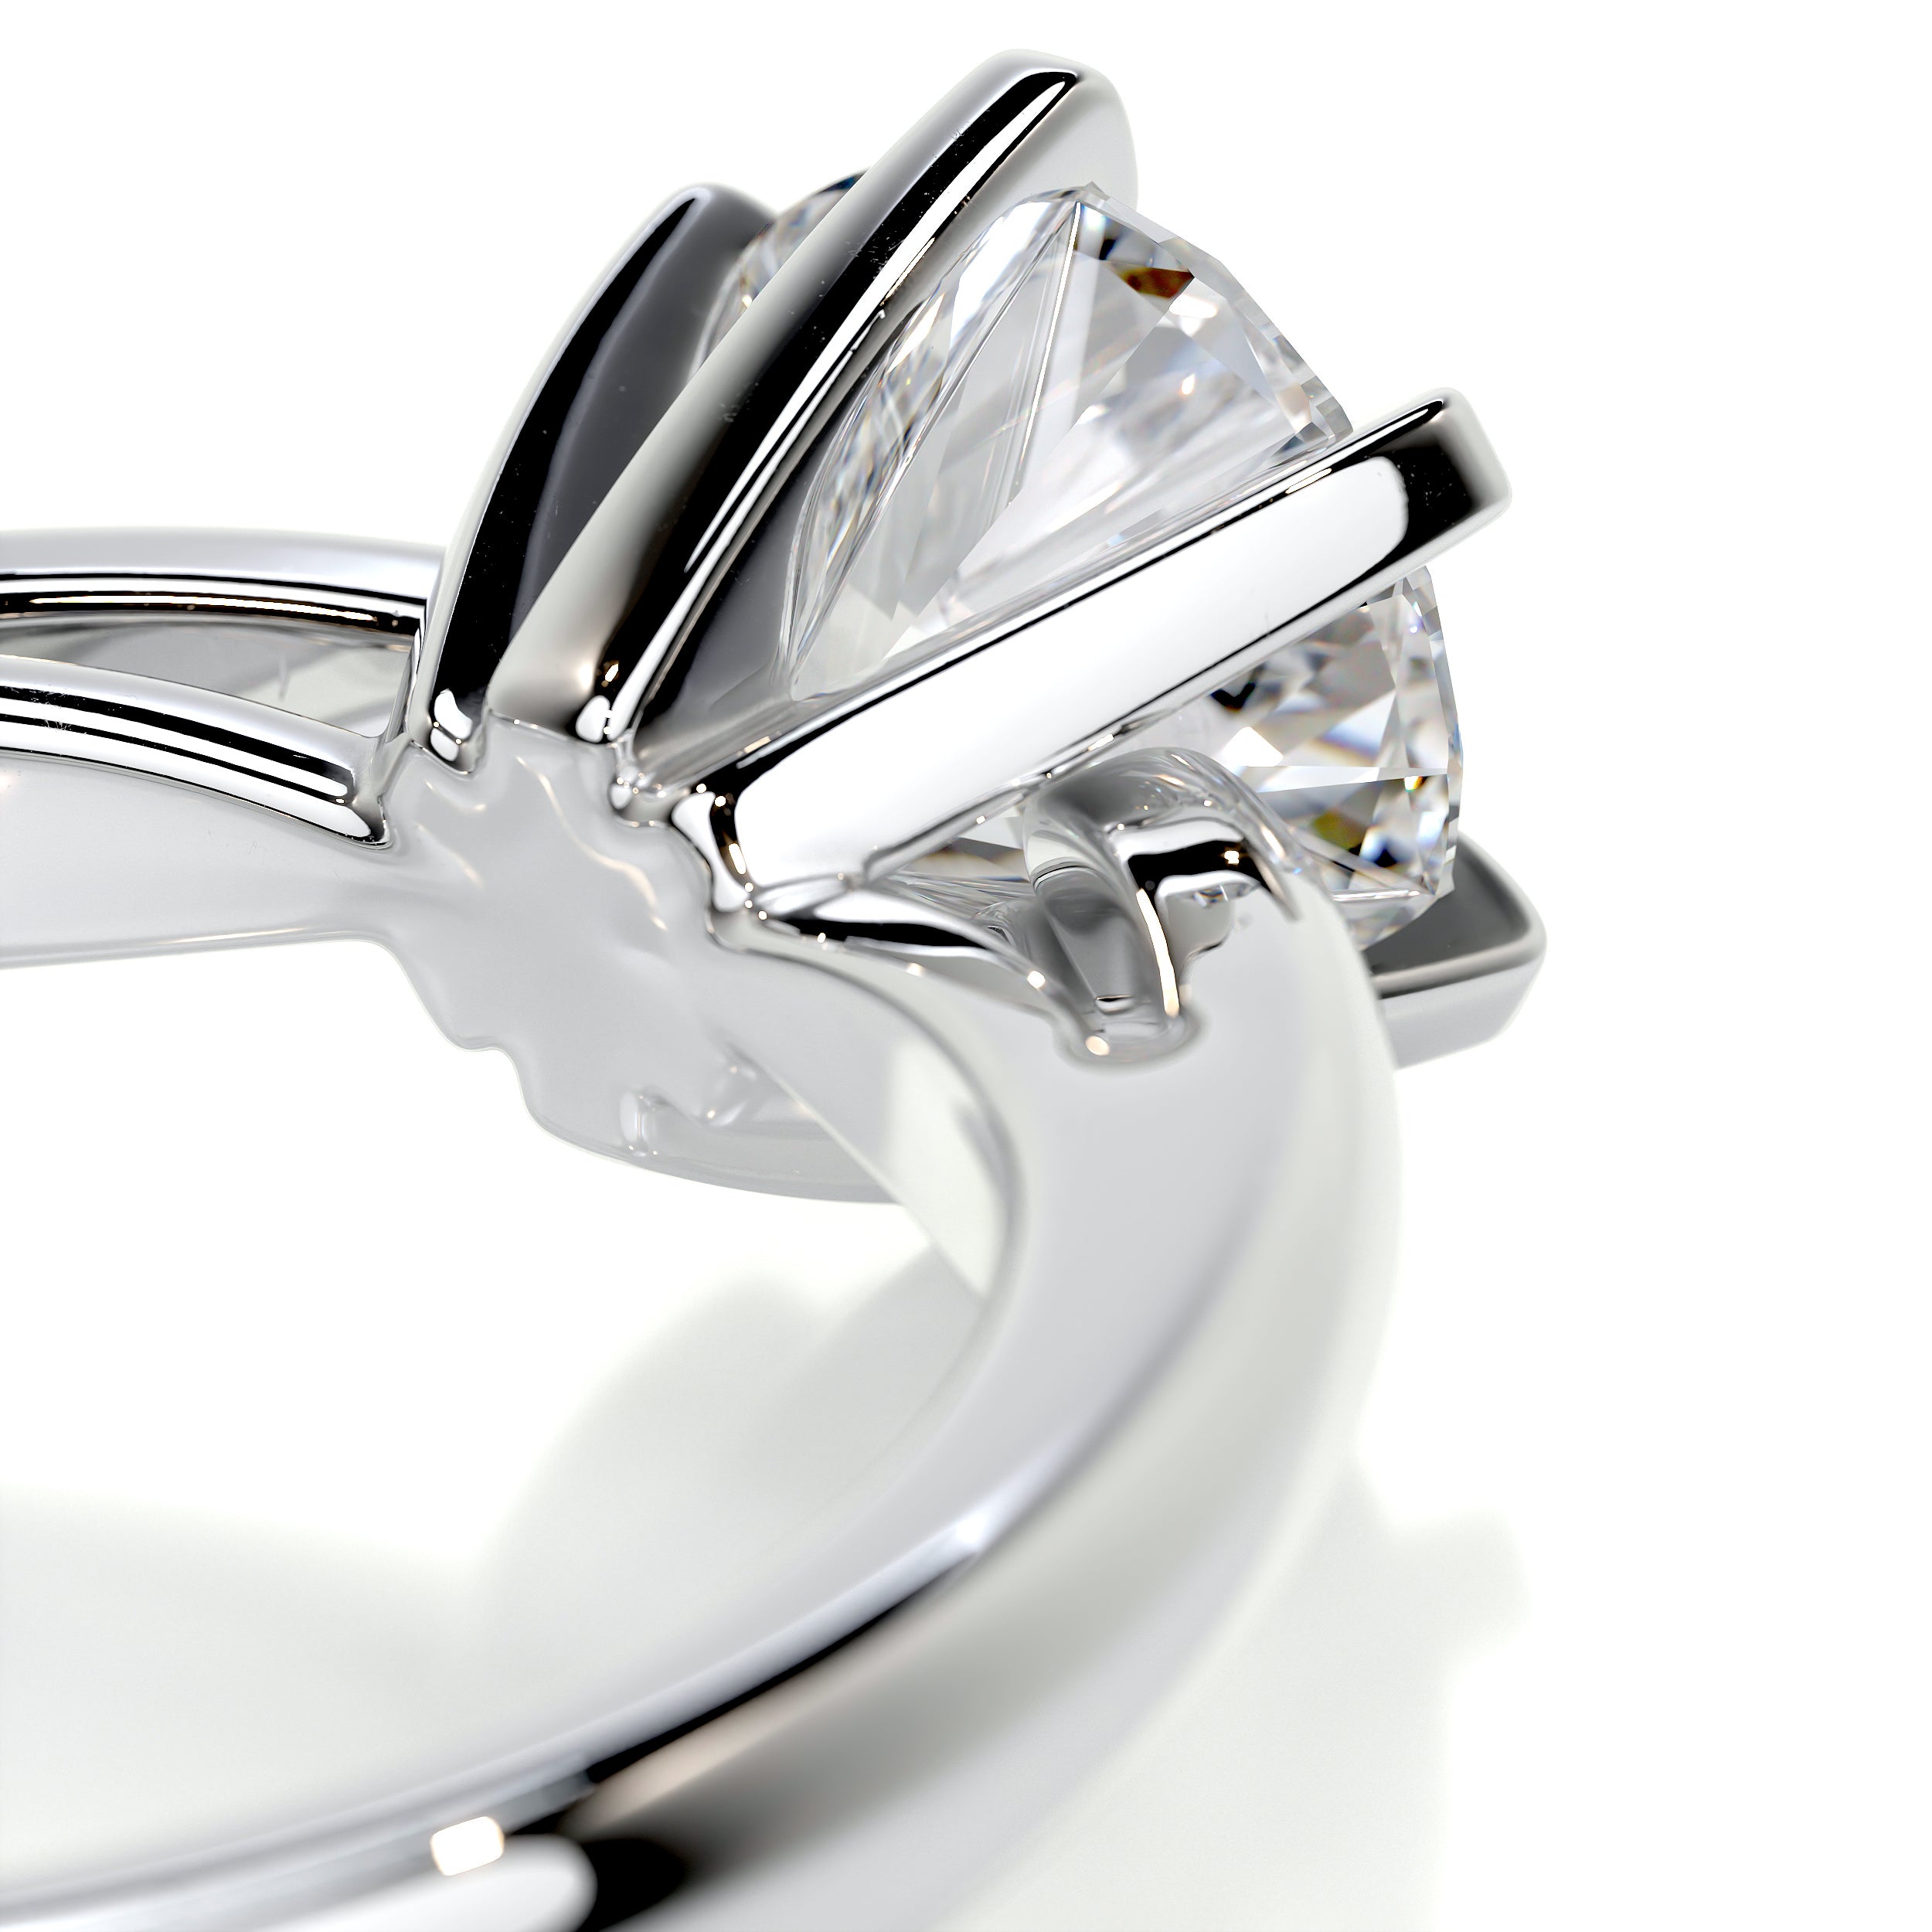 Talia Diamond Engagement Ring - Platinum